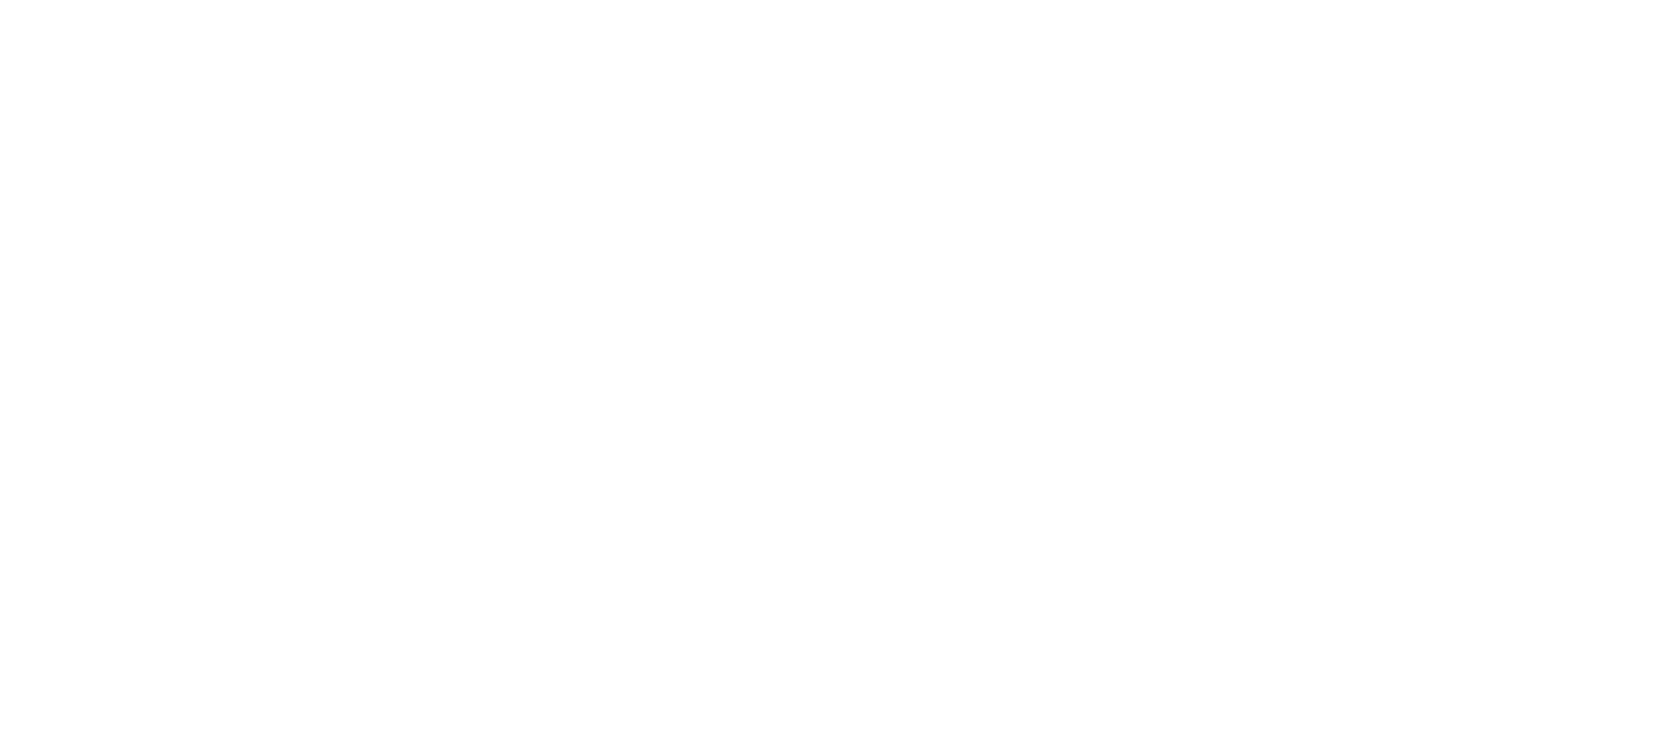 DUCAH Logo in weiß 